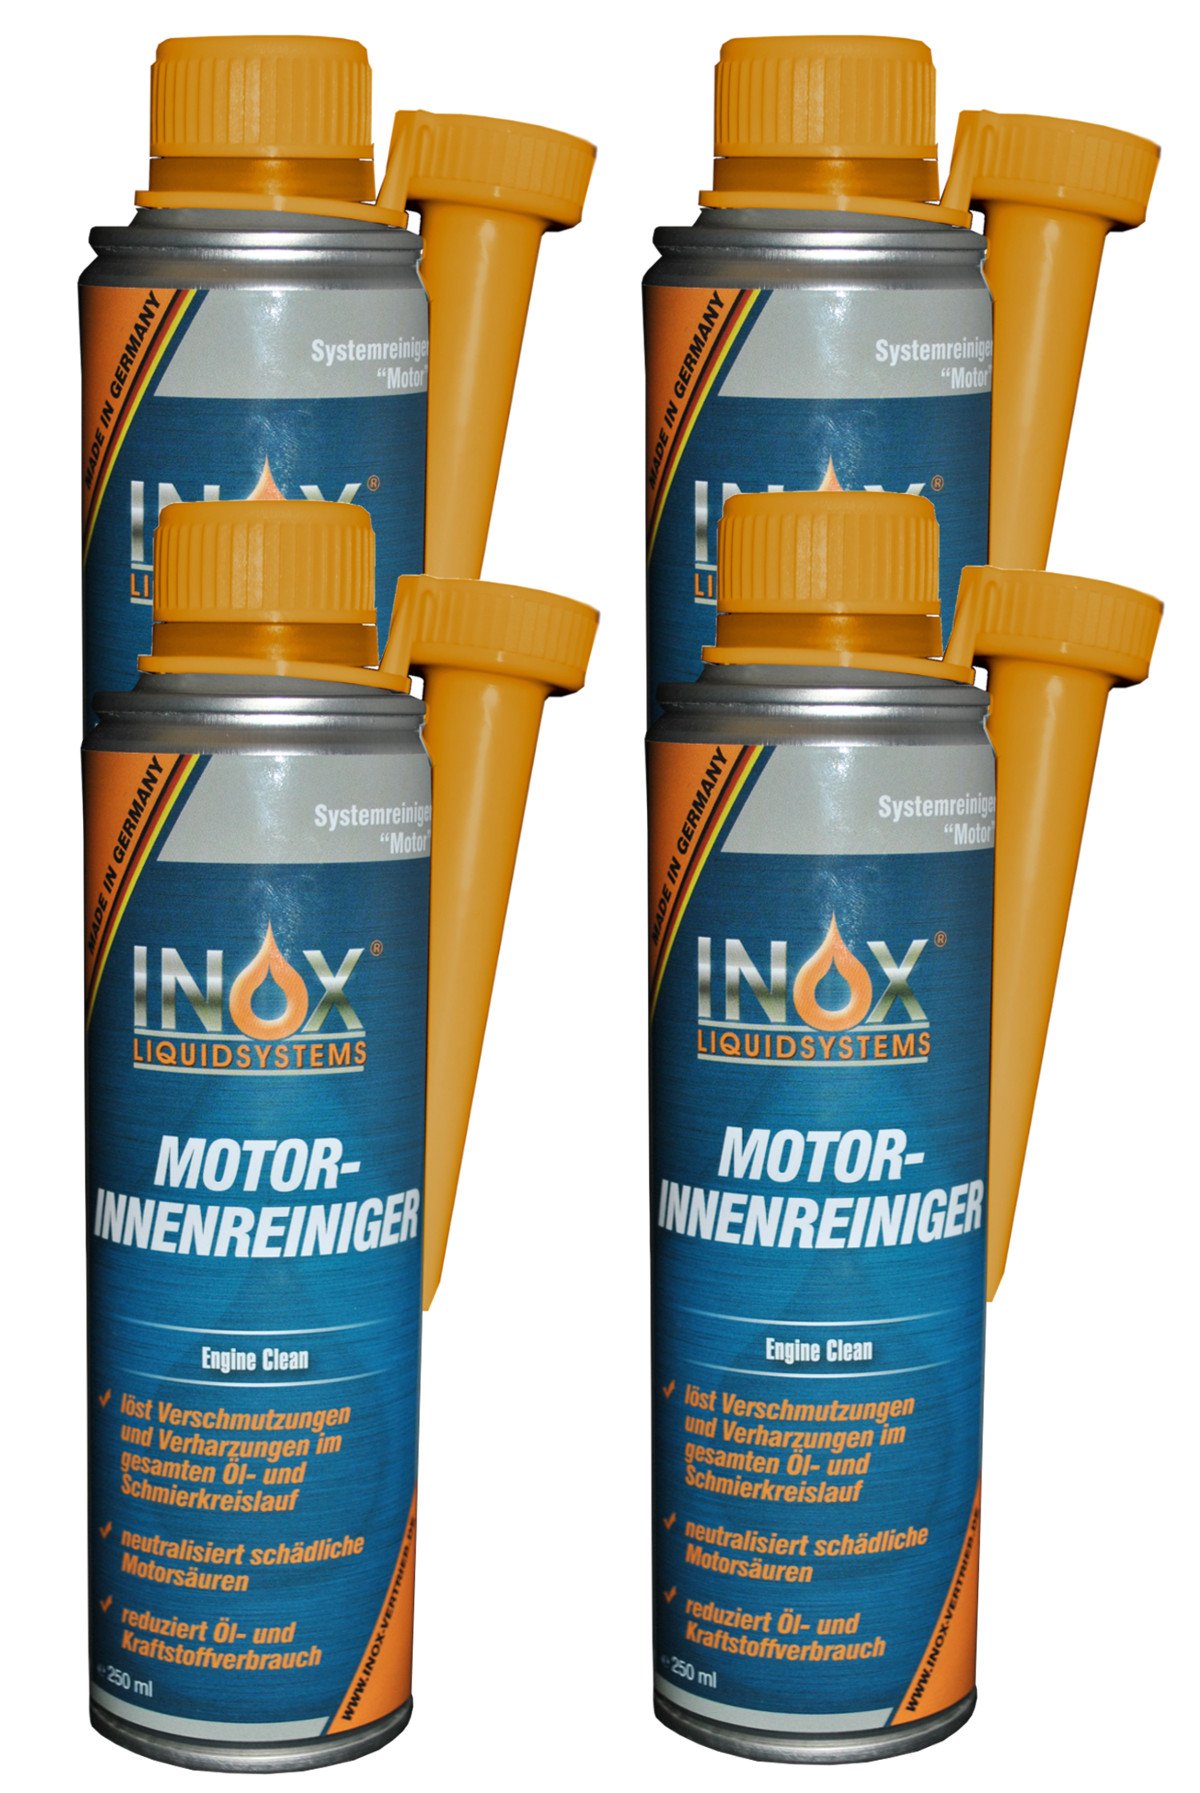 INOX® Motorinnenreiniger Additiv, 4 x 250ml - Reiniger für KFZ Motorsysteme von INOX-LIQUIDSYSTEMS